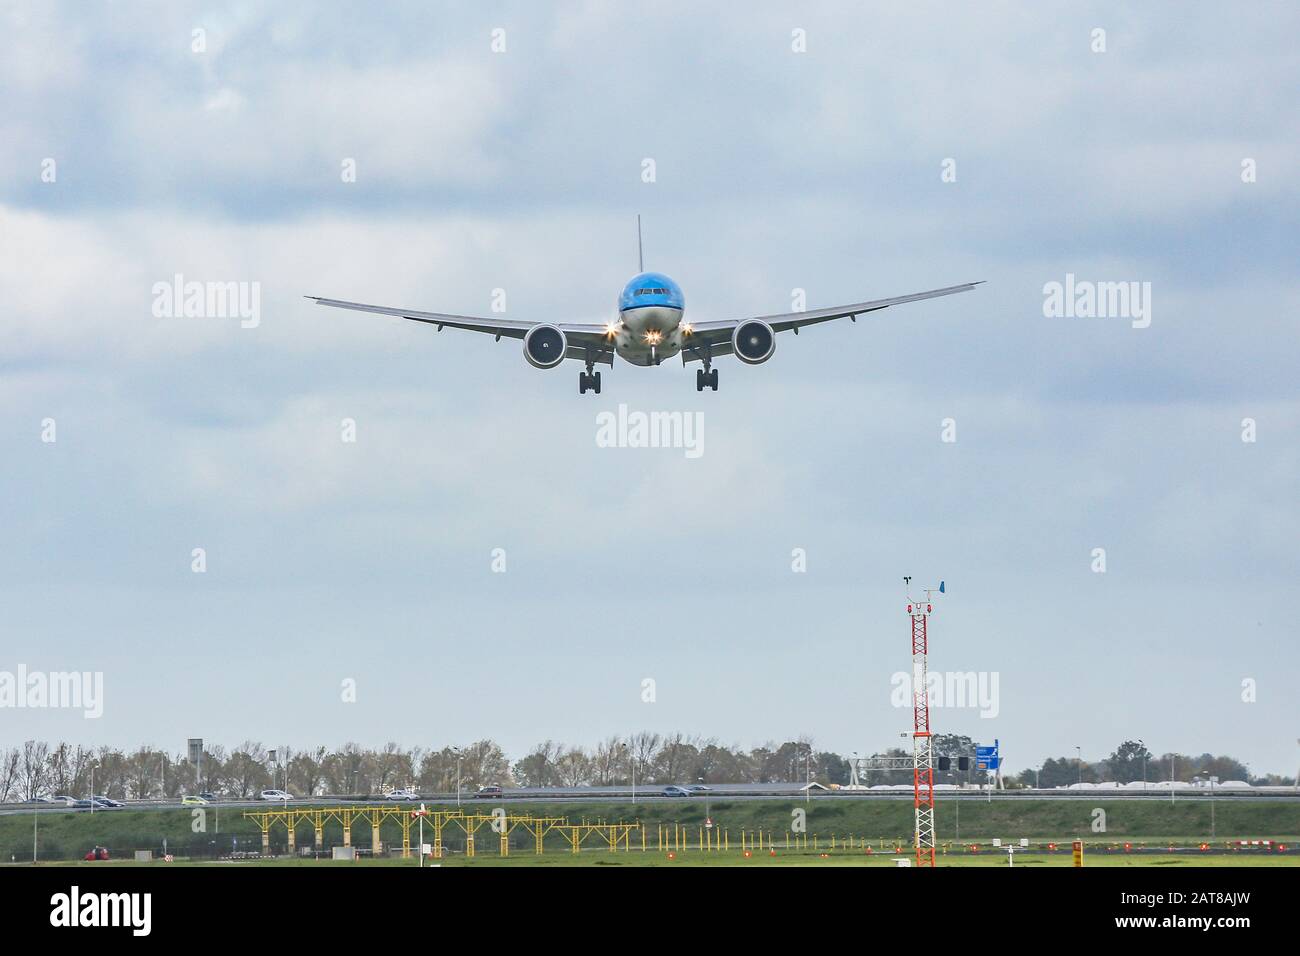 Eine KLM Royal Dutch Airlines Boeing 777-300 Großraumflugzeug landet auf dem Flughafen Amsterdam Schiphol AMS EHAM in den Niederlanden auf der Landebahn Polderbaan. Das Flugzeug besitzt die ETOPS-Zertifizierung für den Transatlantikflug. Stockfoto